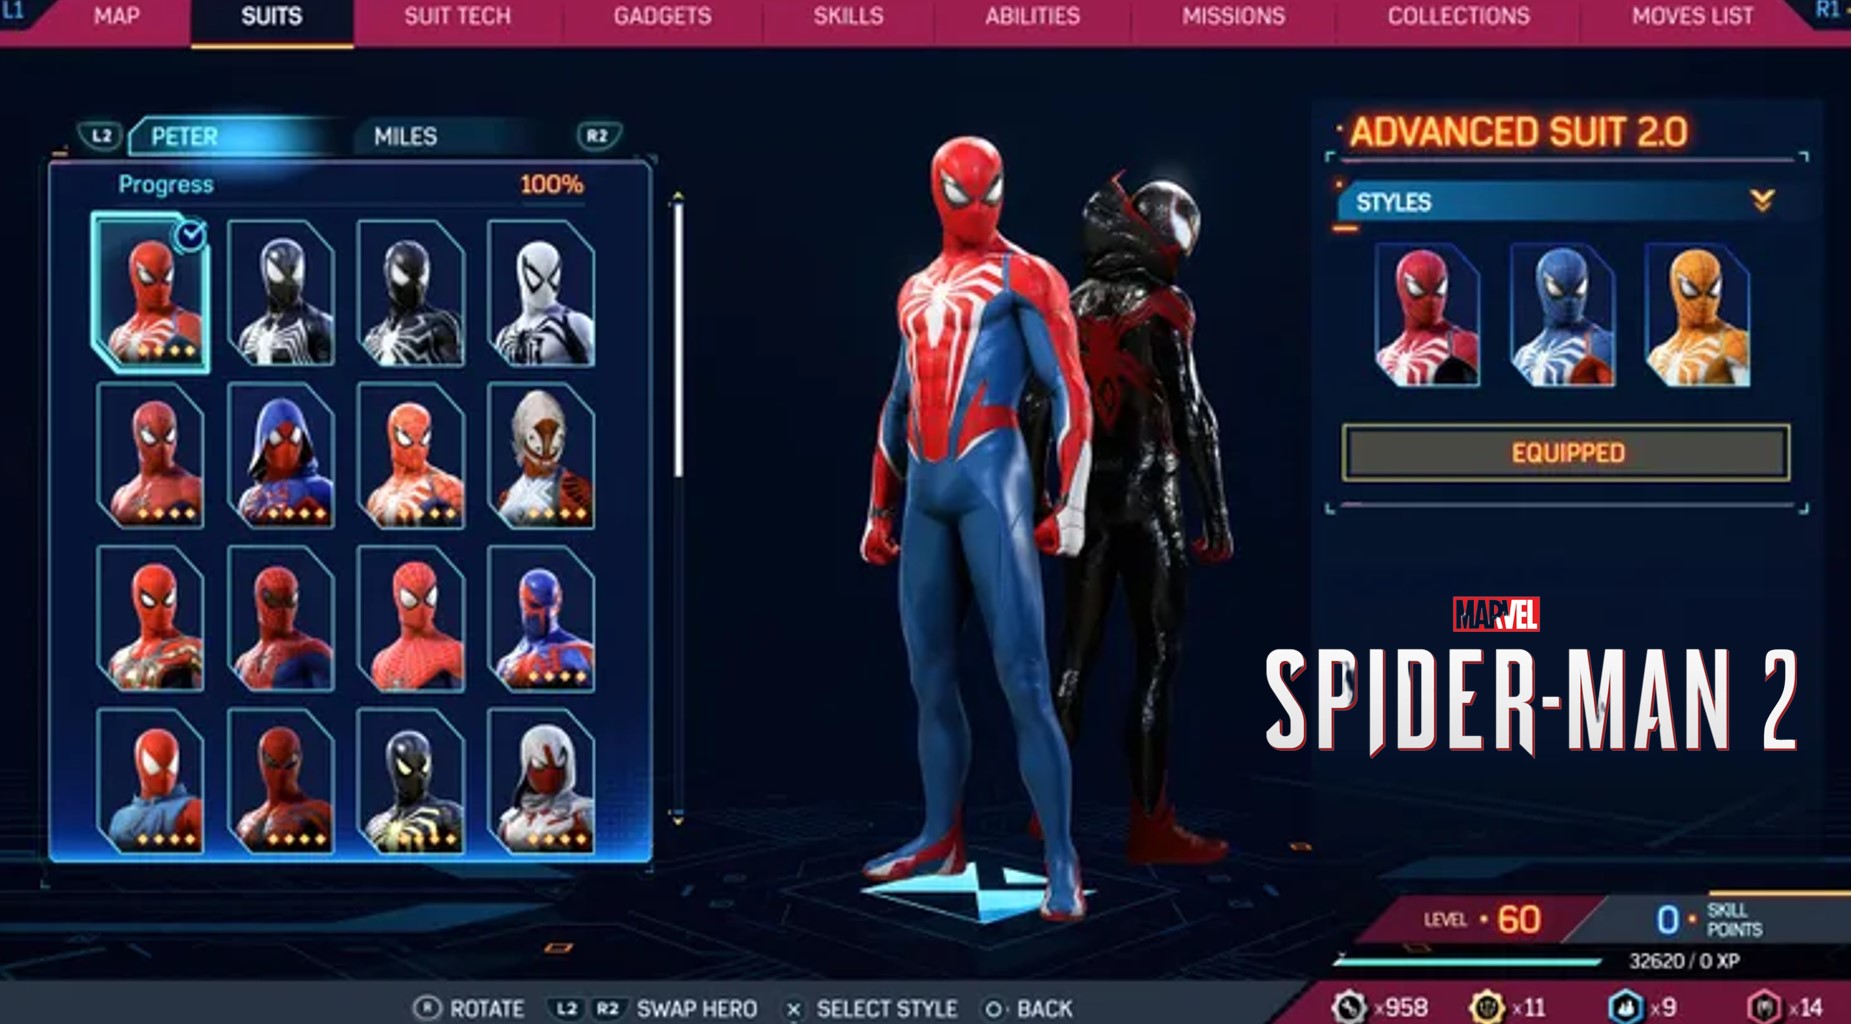 Peter Parker Advenced Suit 2.0